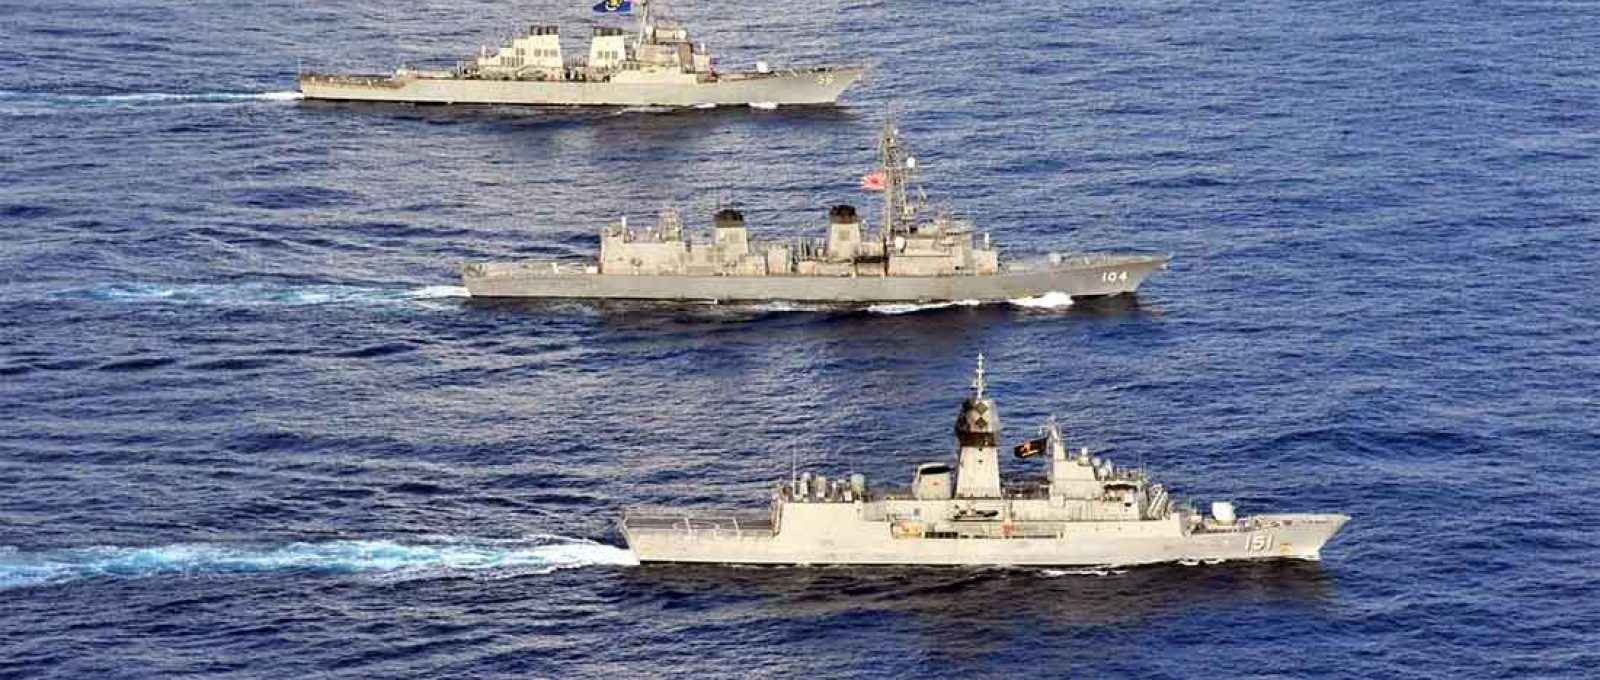 O contratorpedeiro americano USS John S. McCain com navios da Marinha Real Australiana e da Força de Autodefesa Marítima do Japão no Mar do Sul da China para um exercícios em 19 de outubro de 2020 (Foto: US Navy).